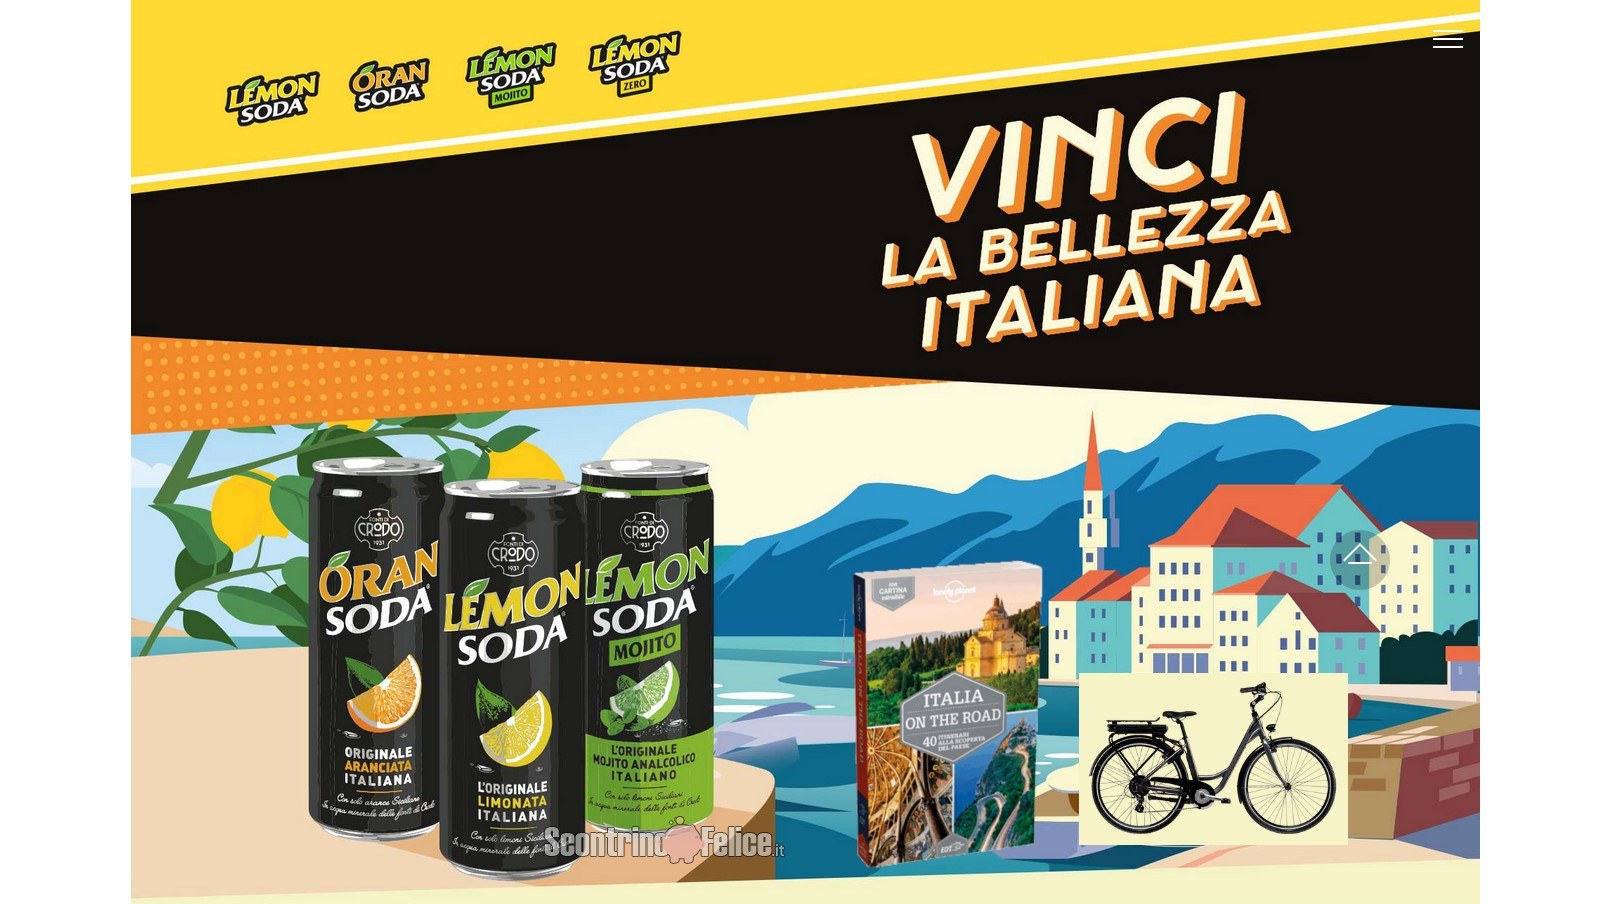 Concorso Lemonsoda "Vinci la bellezza italiana": in palio guide Lonely Planet "Italia On The Road" e bici elettrica E-Spillo Bianchi